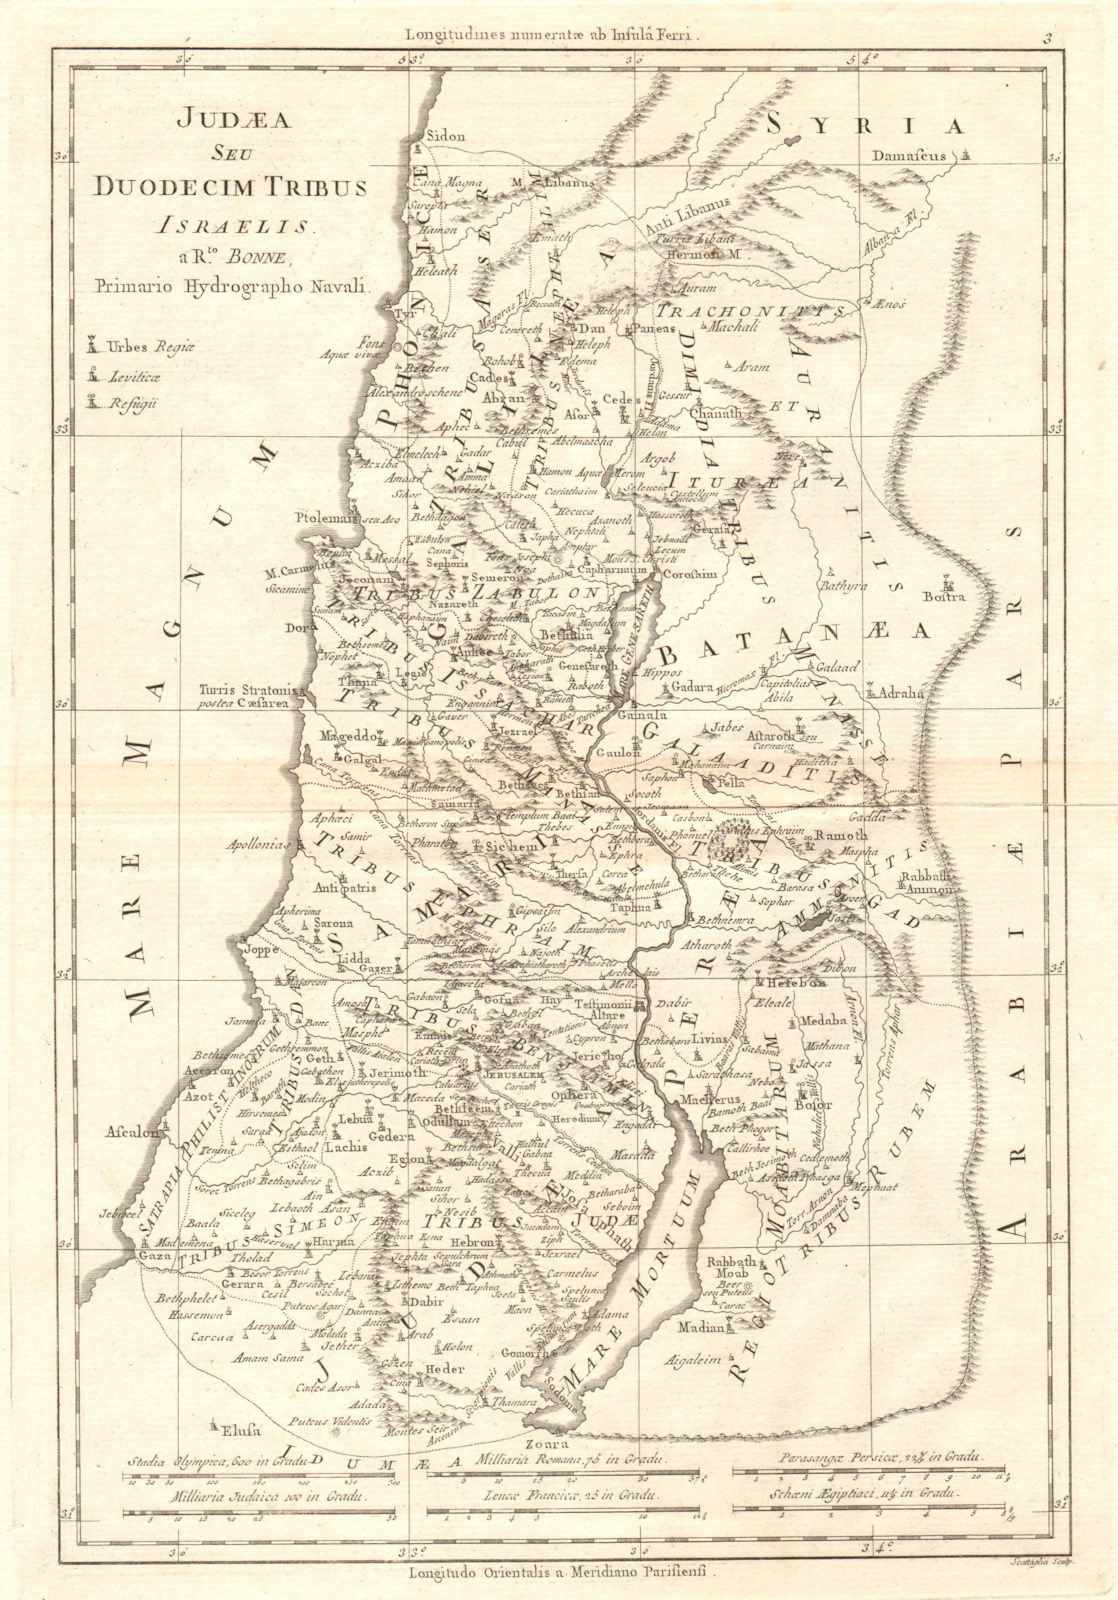 Judaea Seu Duodecim Tribus Israelis. Judea. 12 Tribes of Israel. BONNE 1789 map